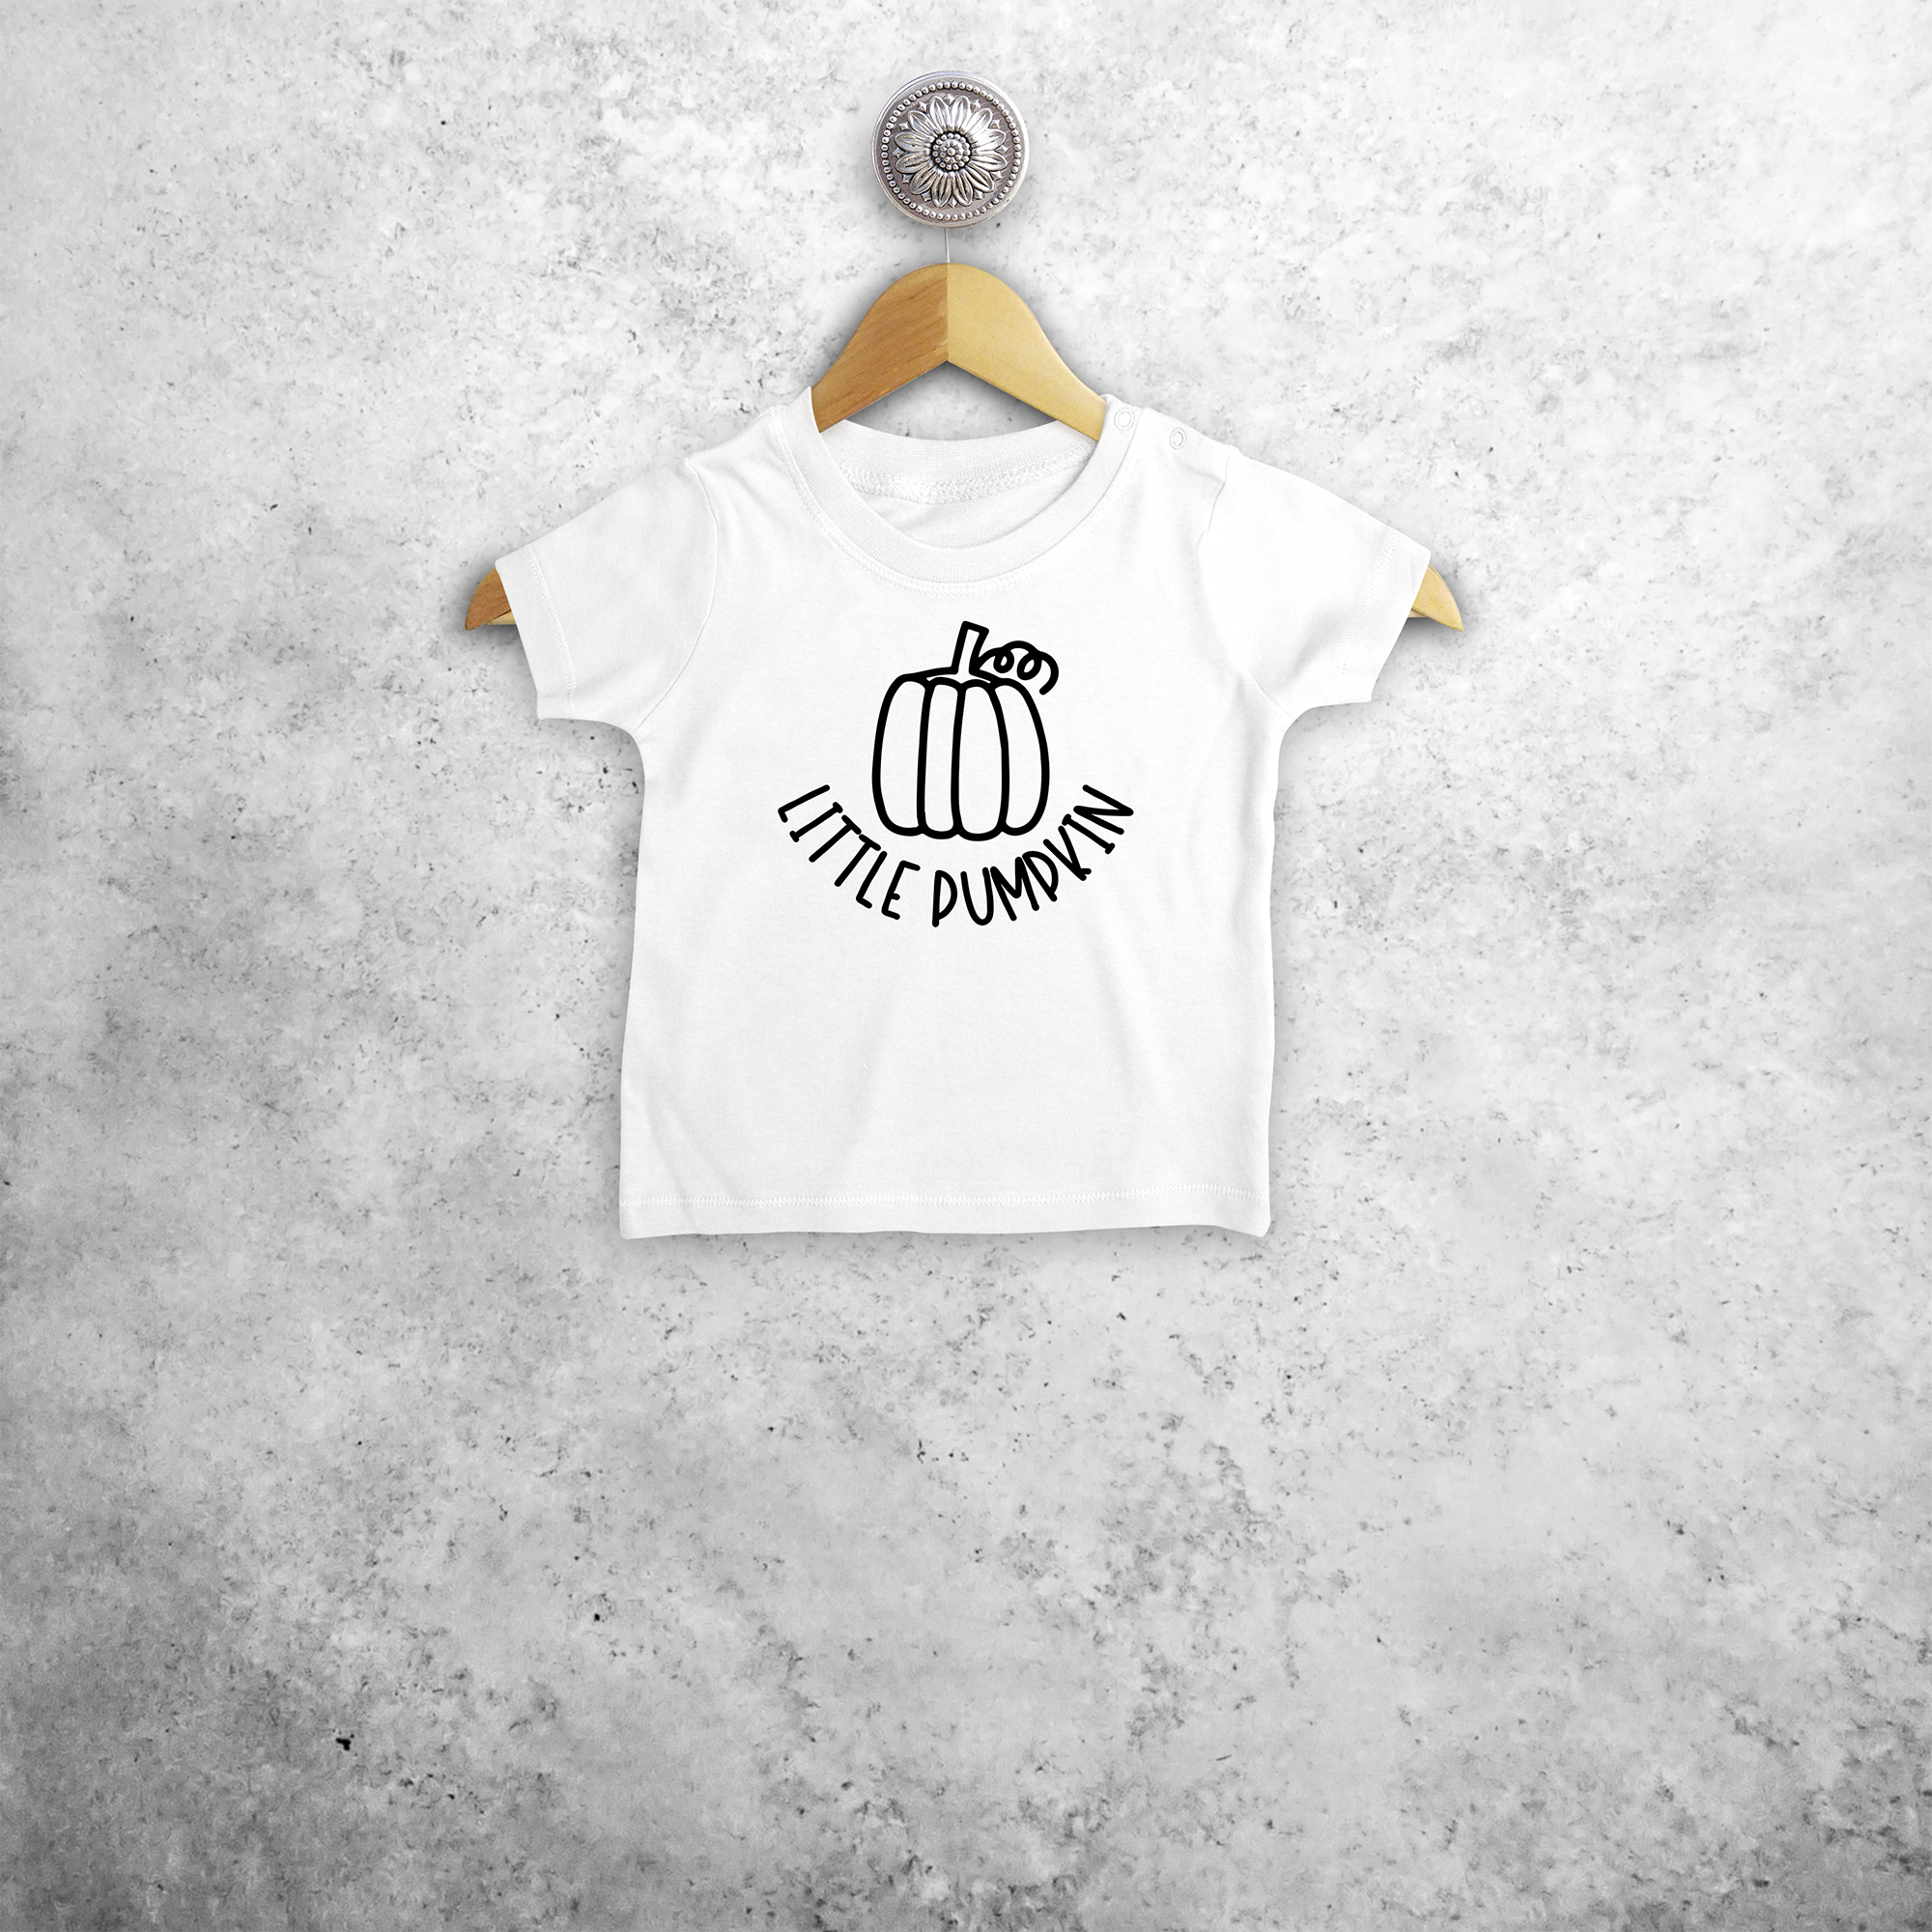 'Little pumpkin' baby shortsleeve shirt